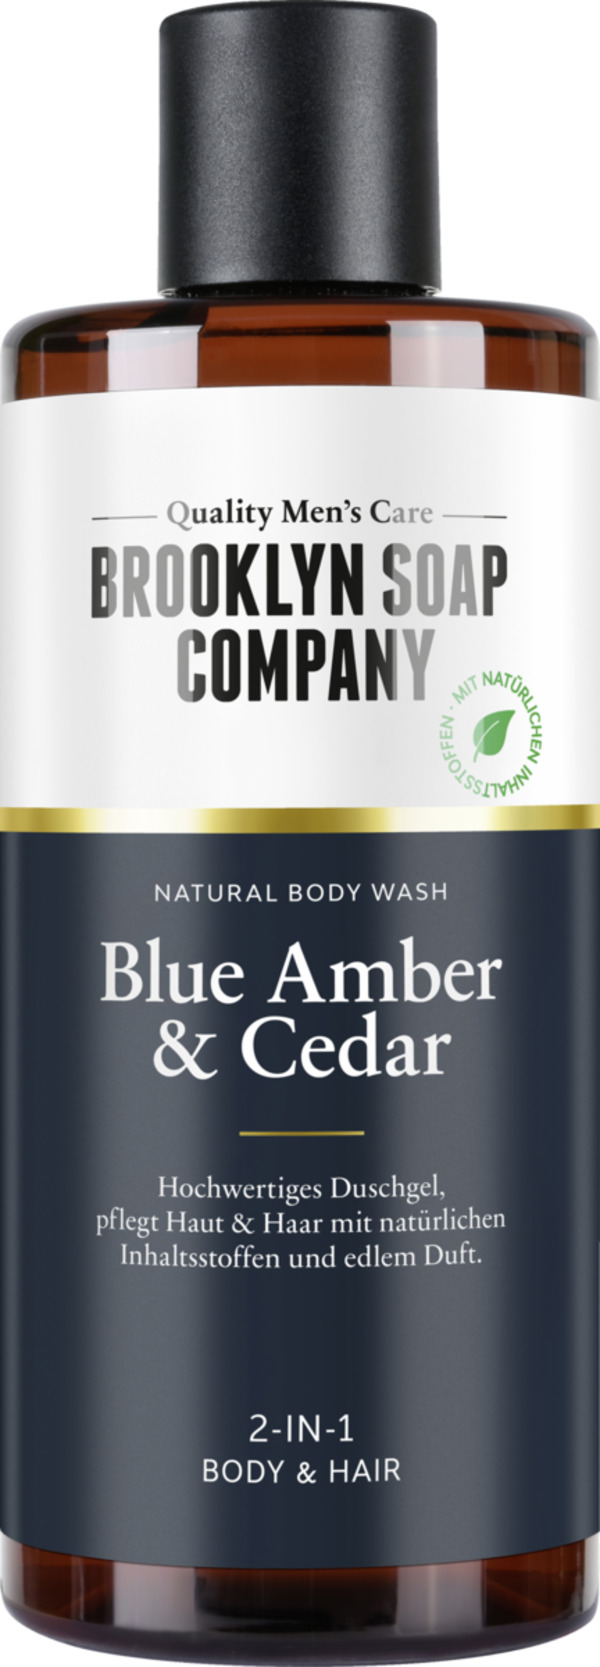 Bild 1 von Brooklyn Soap Company Body Wash Blue Amber & Cedar, 300 ml